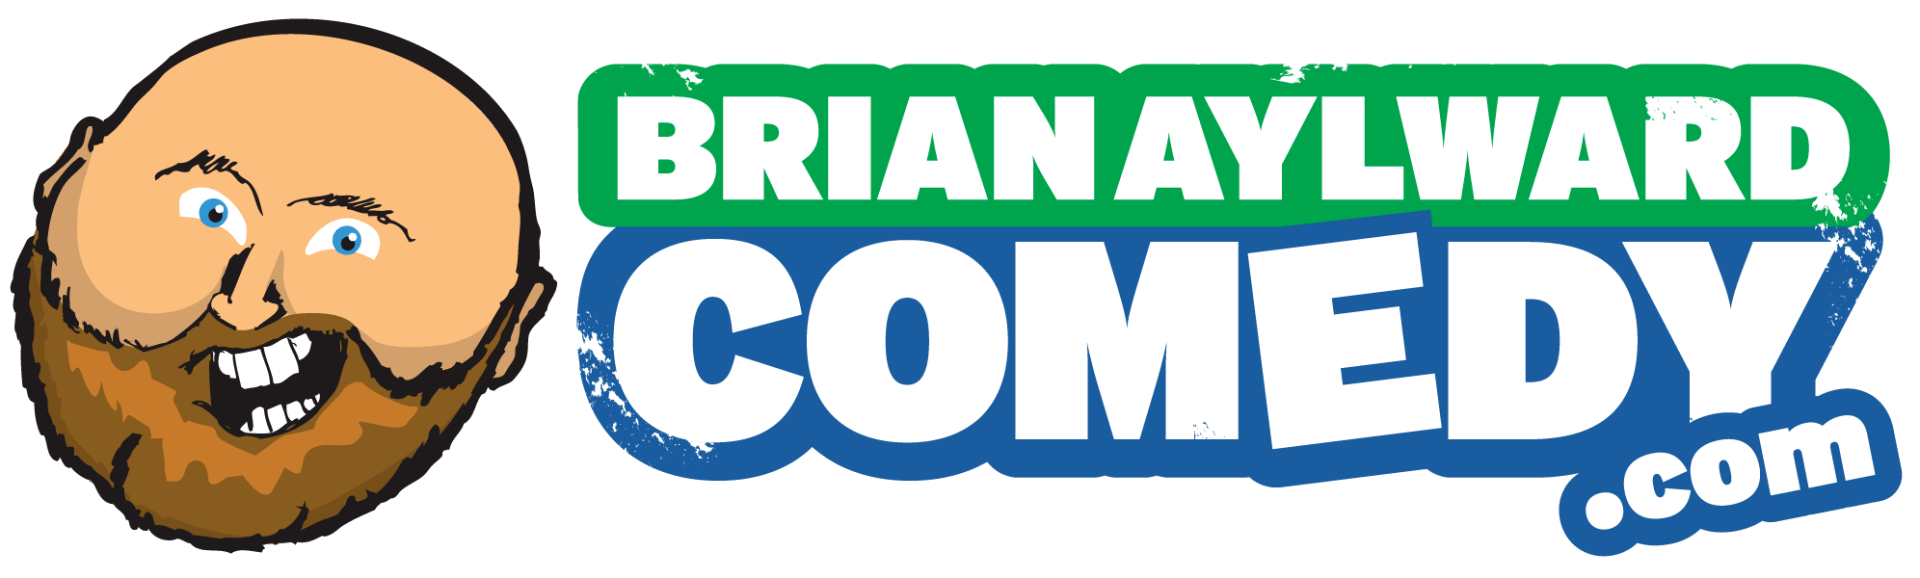 Brian Aylward Comedy